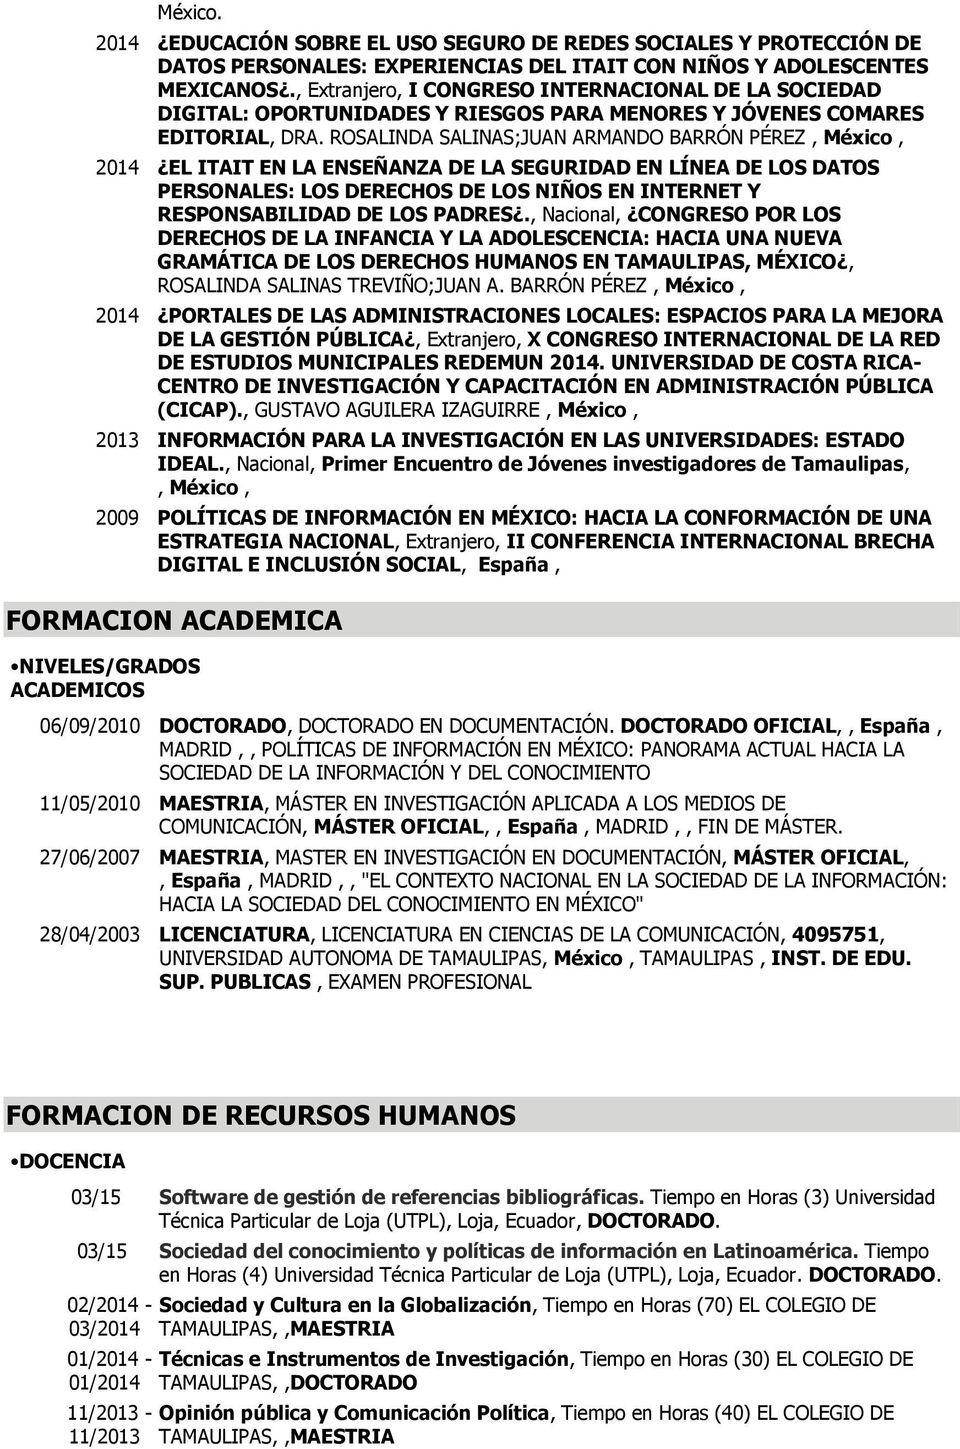 ROSALINDA SALINAS;JUAN ARMANDO BARRÓN PÉREZ, México, 2014 EL ITAIT EN LA ENSEÑANZA DE LA SEGURIDAD EN LÍNEA DE LOS DATOS PERSONALES: LOS DERECHOS DE LOS NIÑOS EN INTERNET Y RESPONSABILIDAD DE LOS